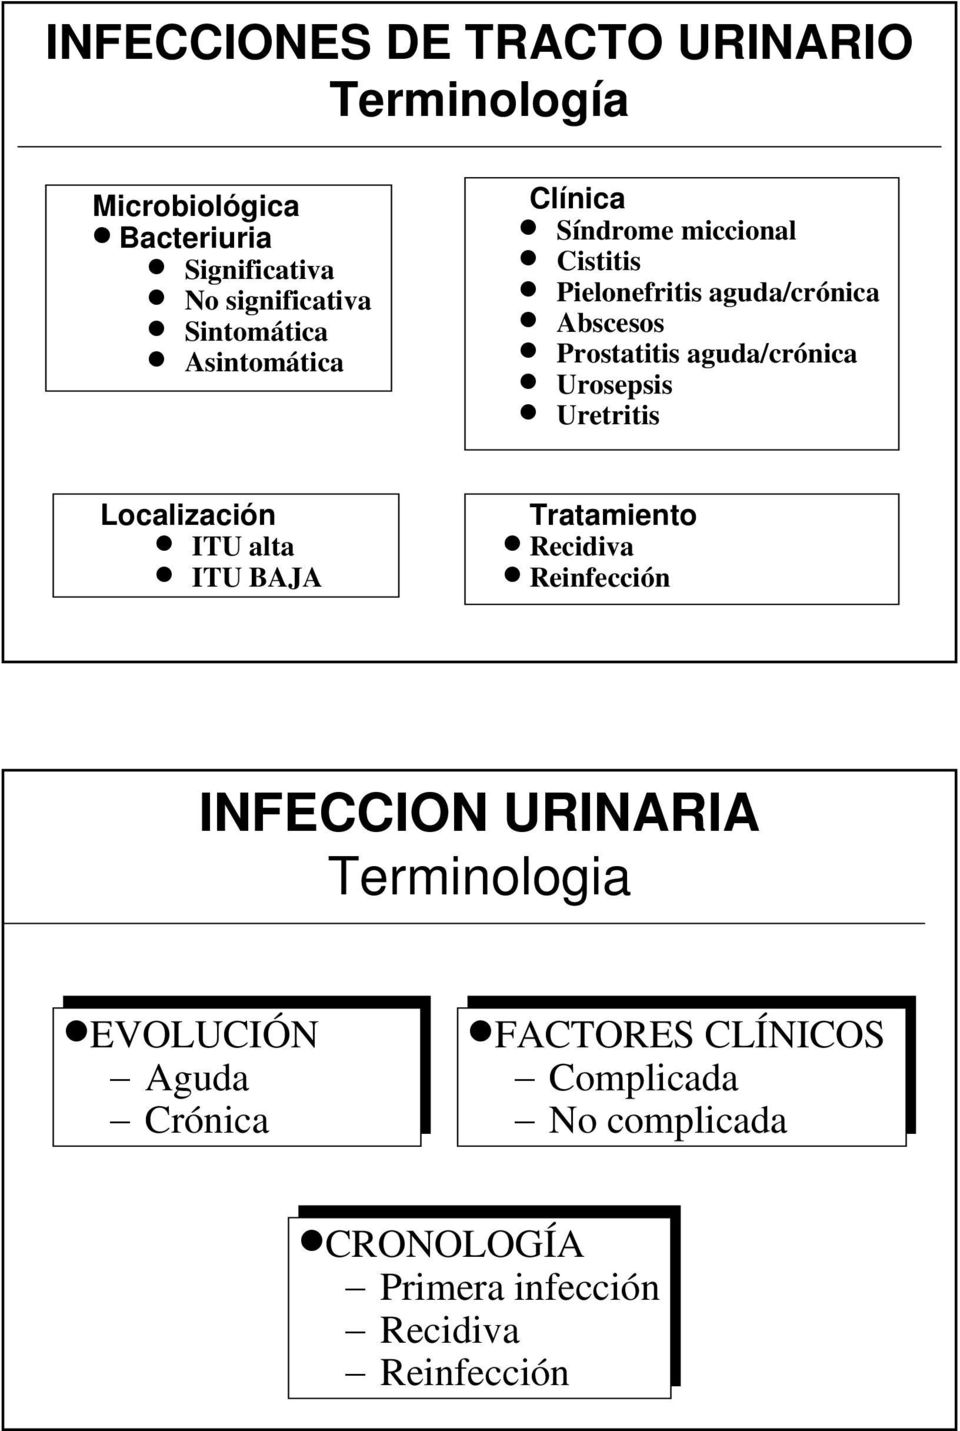 Abscesos Prostatitis aguda/crónica Urosepsis Uretritis Tratamiento Recidiva Reinfección INFECCION URINARIA